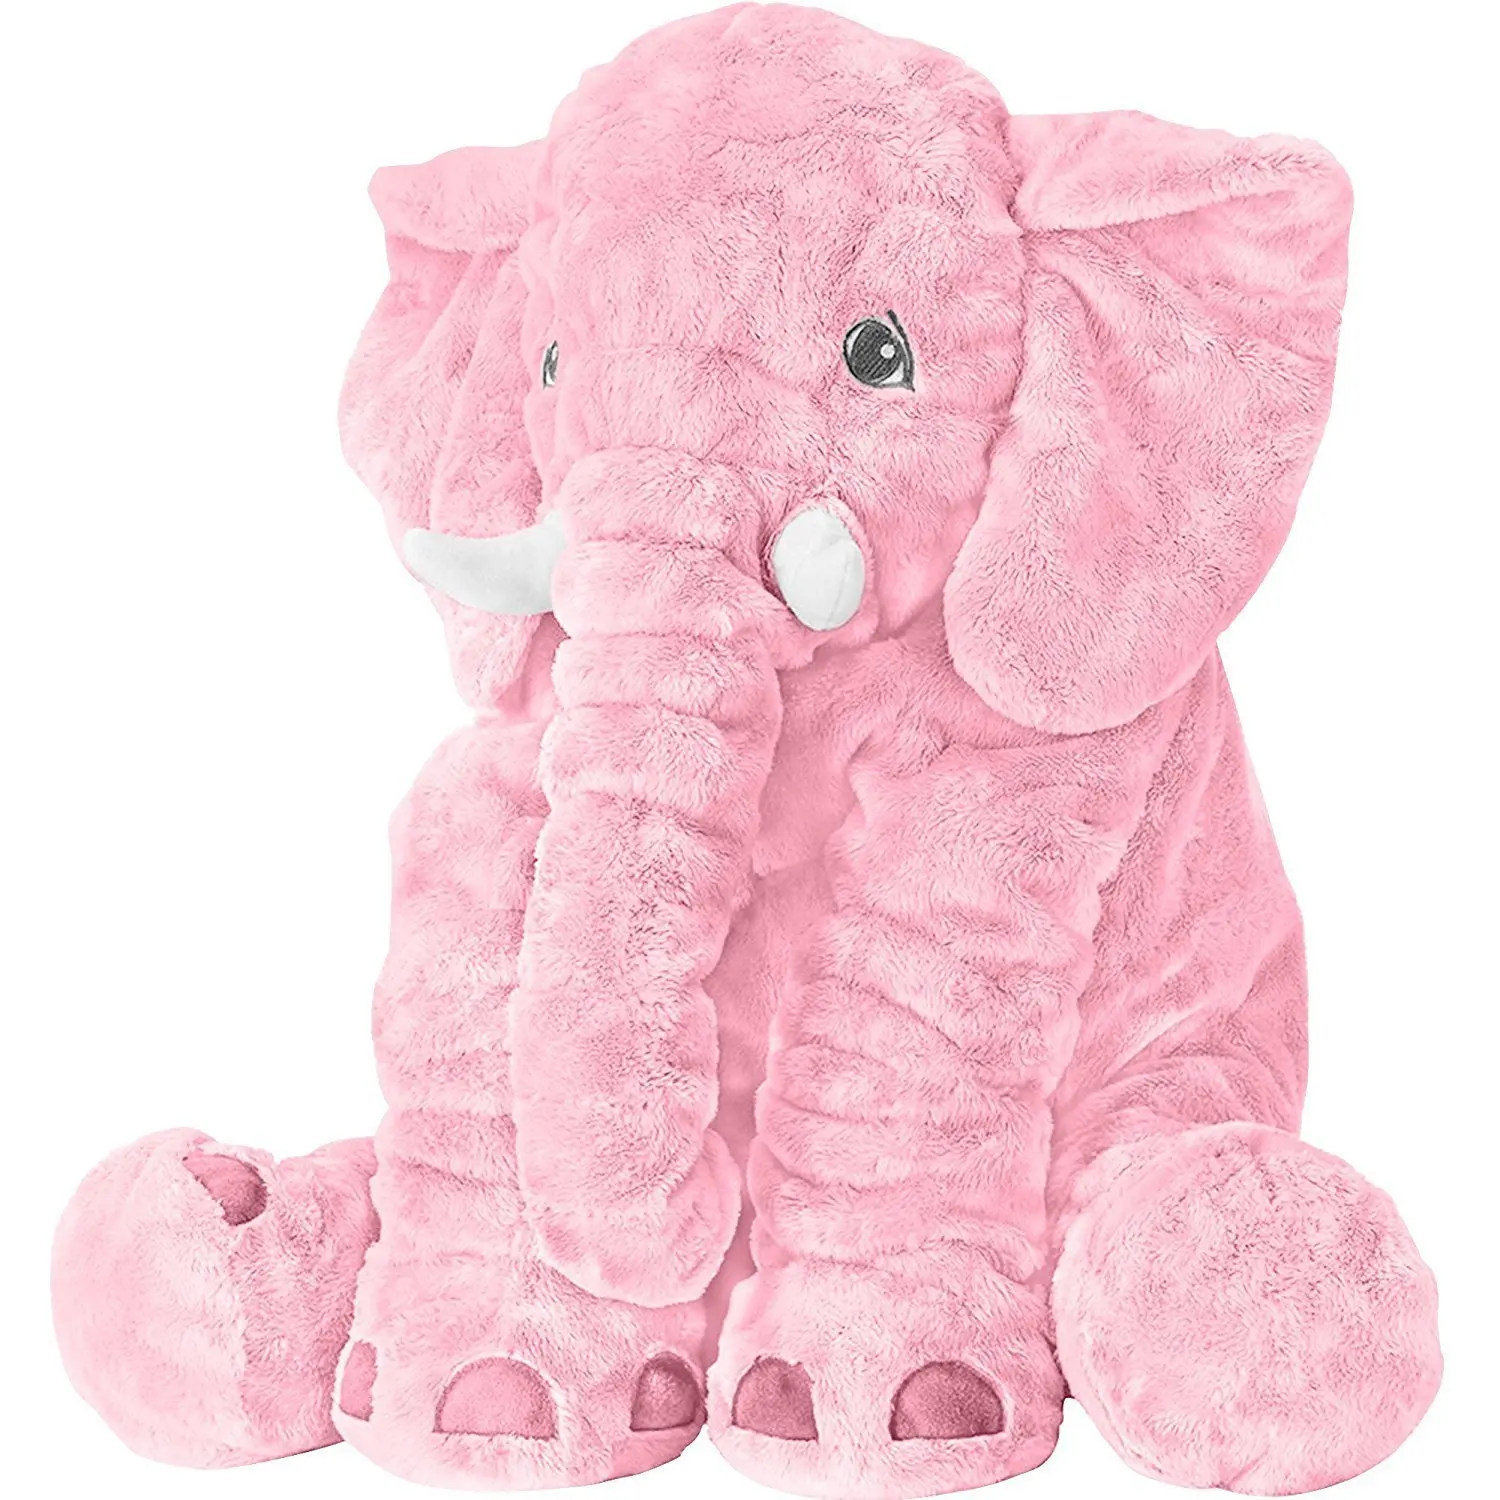 large pink elephant stuffed animal